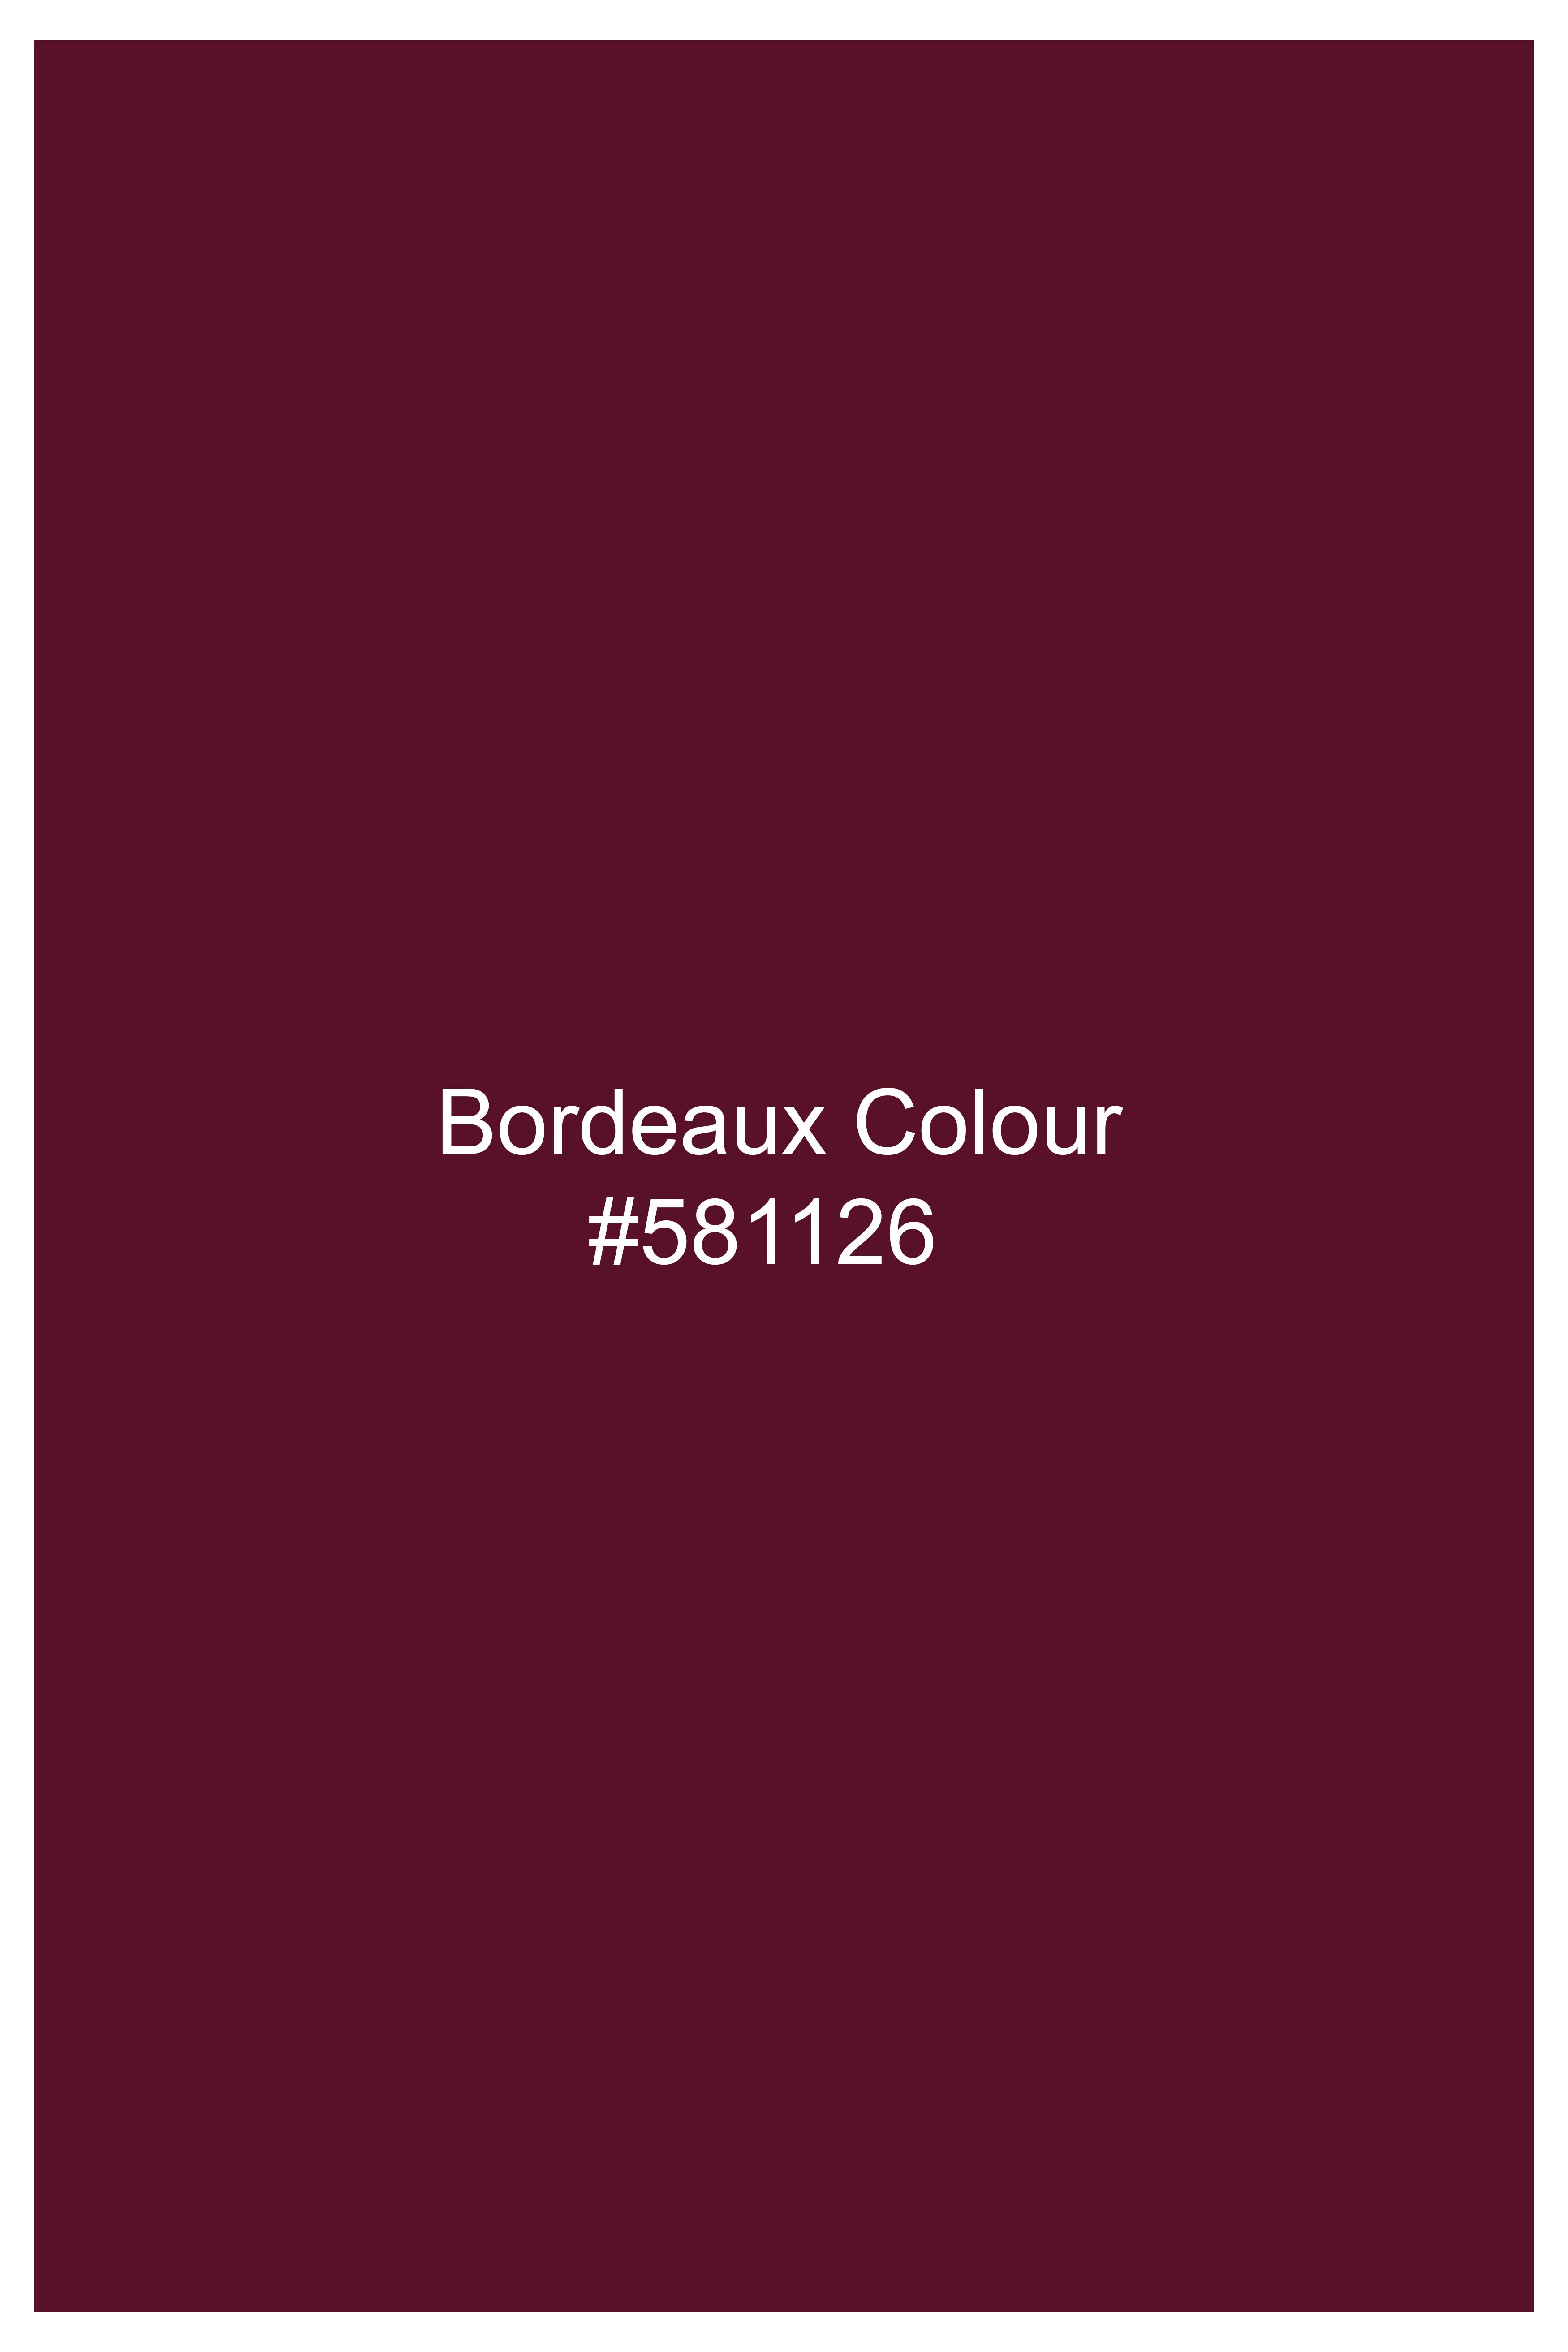 Bordeaux Maroon Cross Buttoned Wool Rich Bandhgala Blazer BL3050-CBG2-36, BL3050-CBG2-38, BL3050-CBG2-40, BL3050-CBG2-42, BL3050-CBG2-44, BL3050-CBG2-46, BL3050-CBG2-48, BL3050-CBG2-50, BL3050-CBG2-52, BL3050-CBG2-54, BL3050-CBG2-56, BL3050-CBG2-58, BL3050-CBG2-60